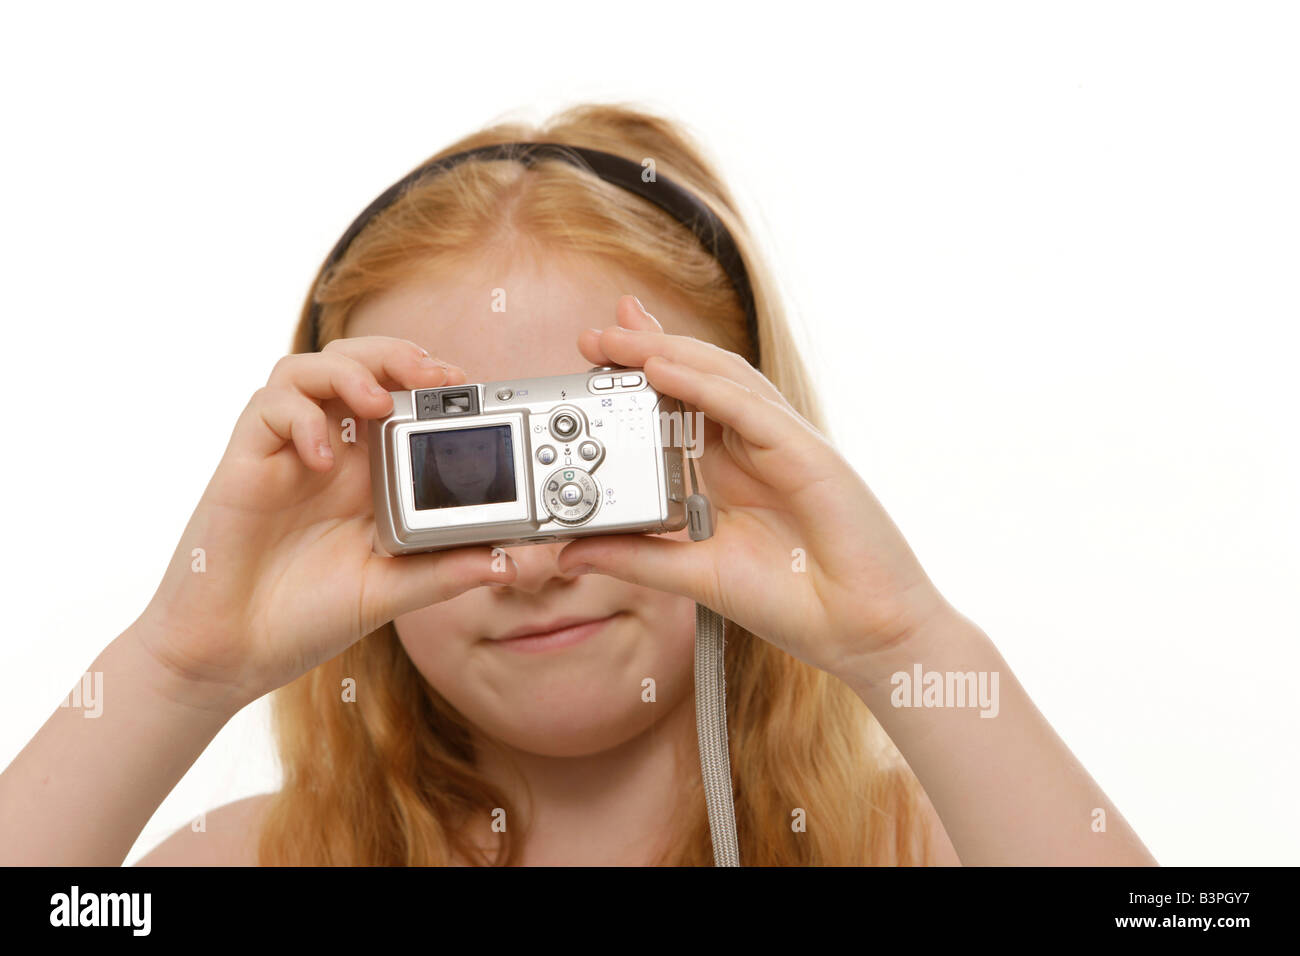 8-j hrige rothaarige Mädchen fotografieren sich selbst mit einer Digitalkamera Stockfoto